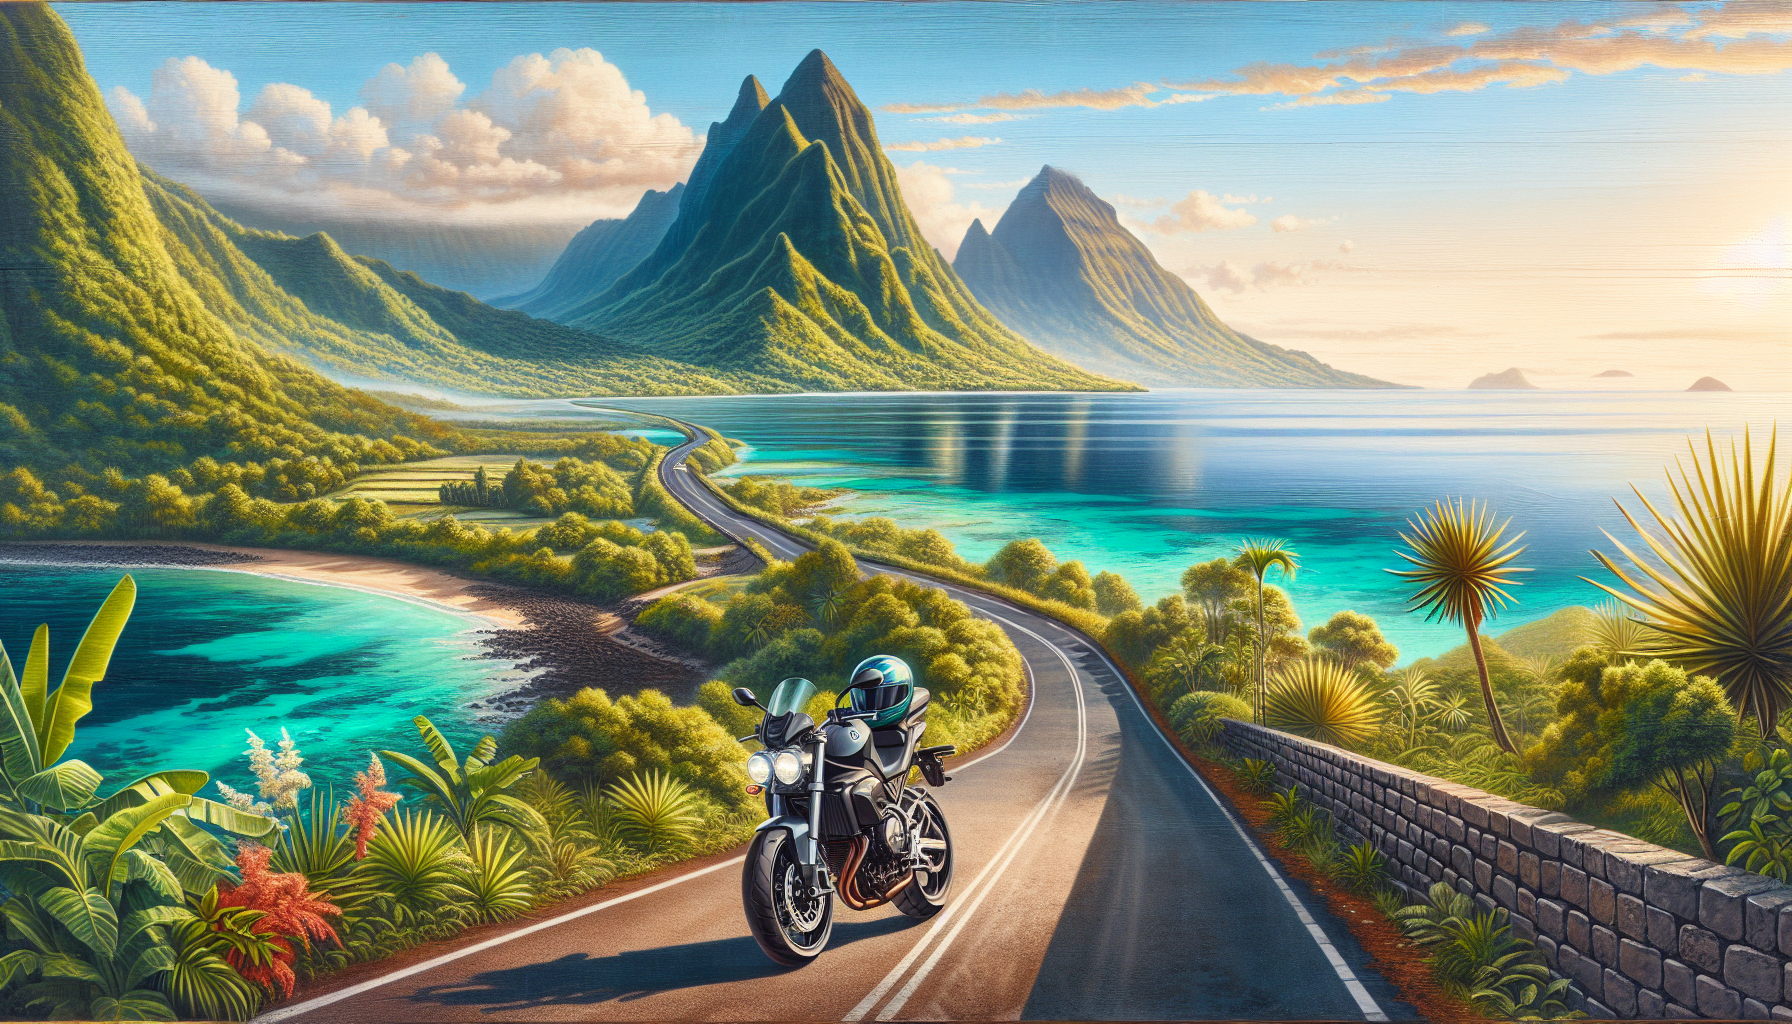 découvrez les avantages d'une assurance moto à la réunion avec assurance moto 974. protégez-vous sur les routes de l'île avec nos offres sur mesure.